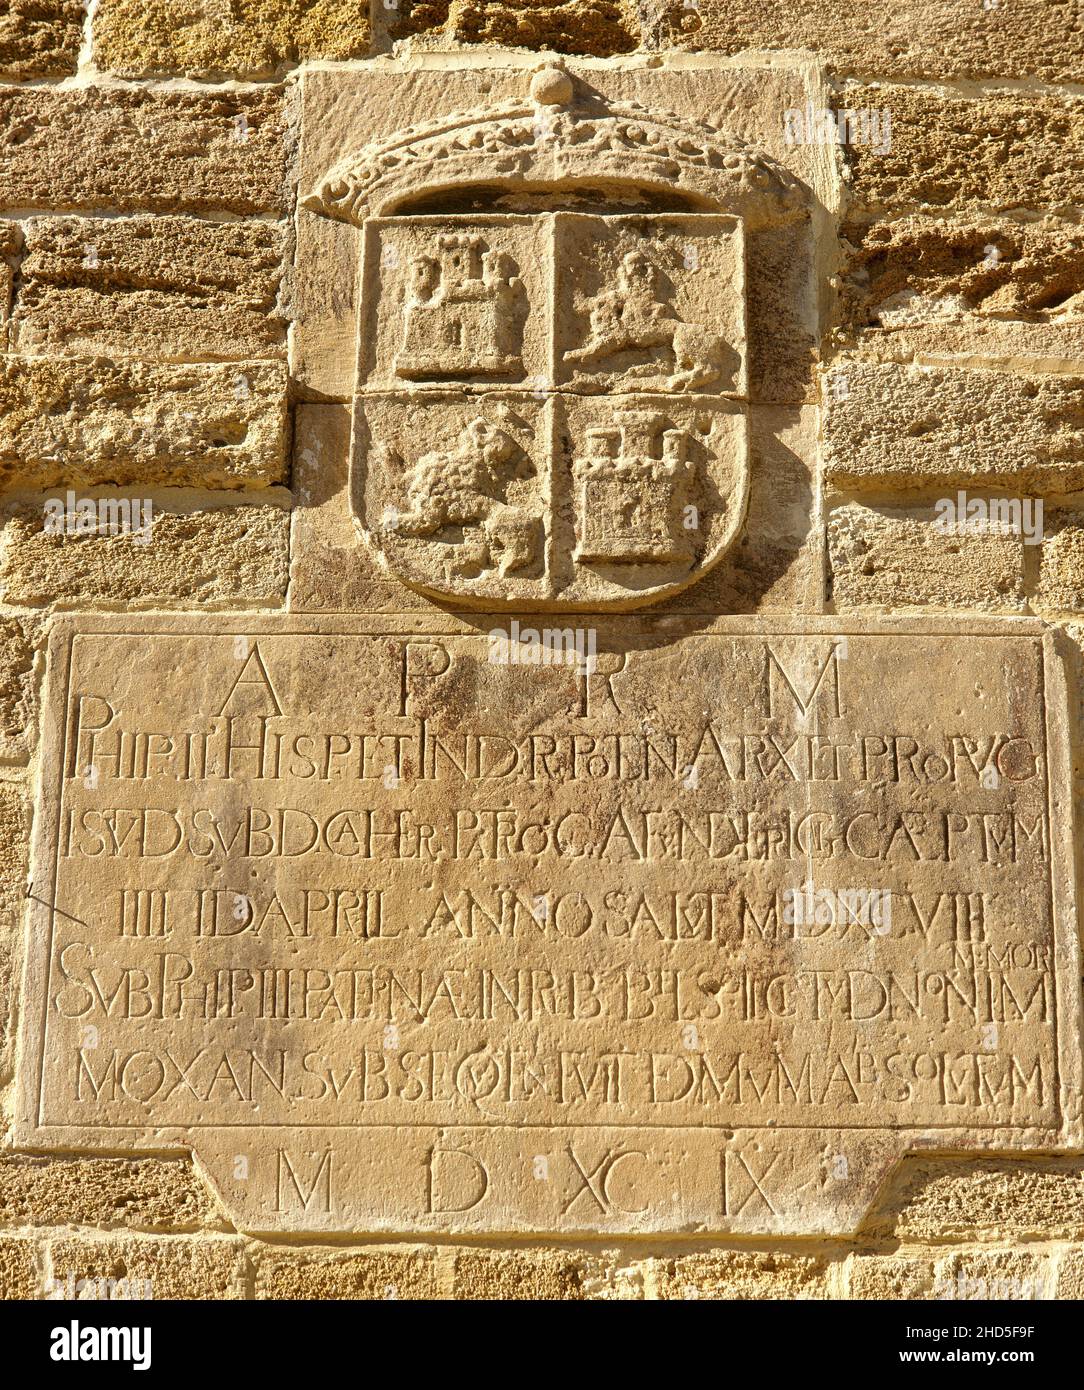 Espagne, Andalousie, Cadix.Porte de la Caleta.Construit en 1748 comme nouvelle porte d'accès à la Caleta de Santa Catalina, connue sous le nom de « la Caleta ».Après l'attaque anglo-hollandaise contre la ville en 1596, et le sacking qui a suivi, il a été décidé que tout le périmètre de Cadix doit être muré.La construction a commencé à la fin du 16th siècle et a été achevée au 18th siècle.Détail d'une inscription en latin script.Il mentionne le mois d'avril 1558, quand les travaux de construction ont commencé sur le château de Santa Catalina, la plus ancienne construction militaire à Cadix, réalisée par l'architecte et l'engi militaire Banque D'Images